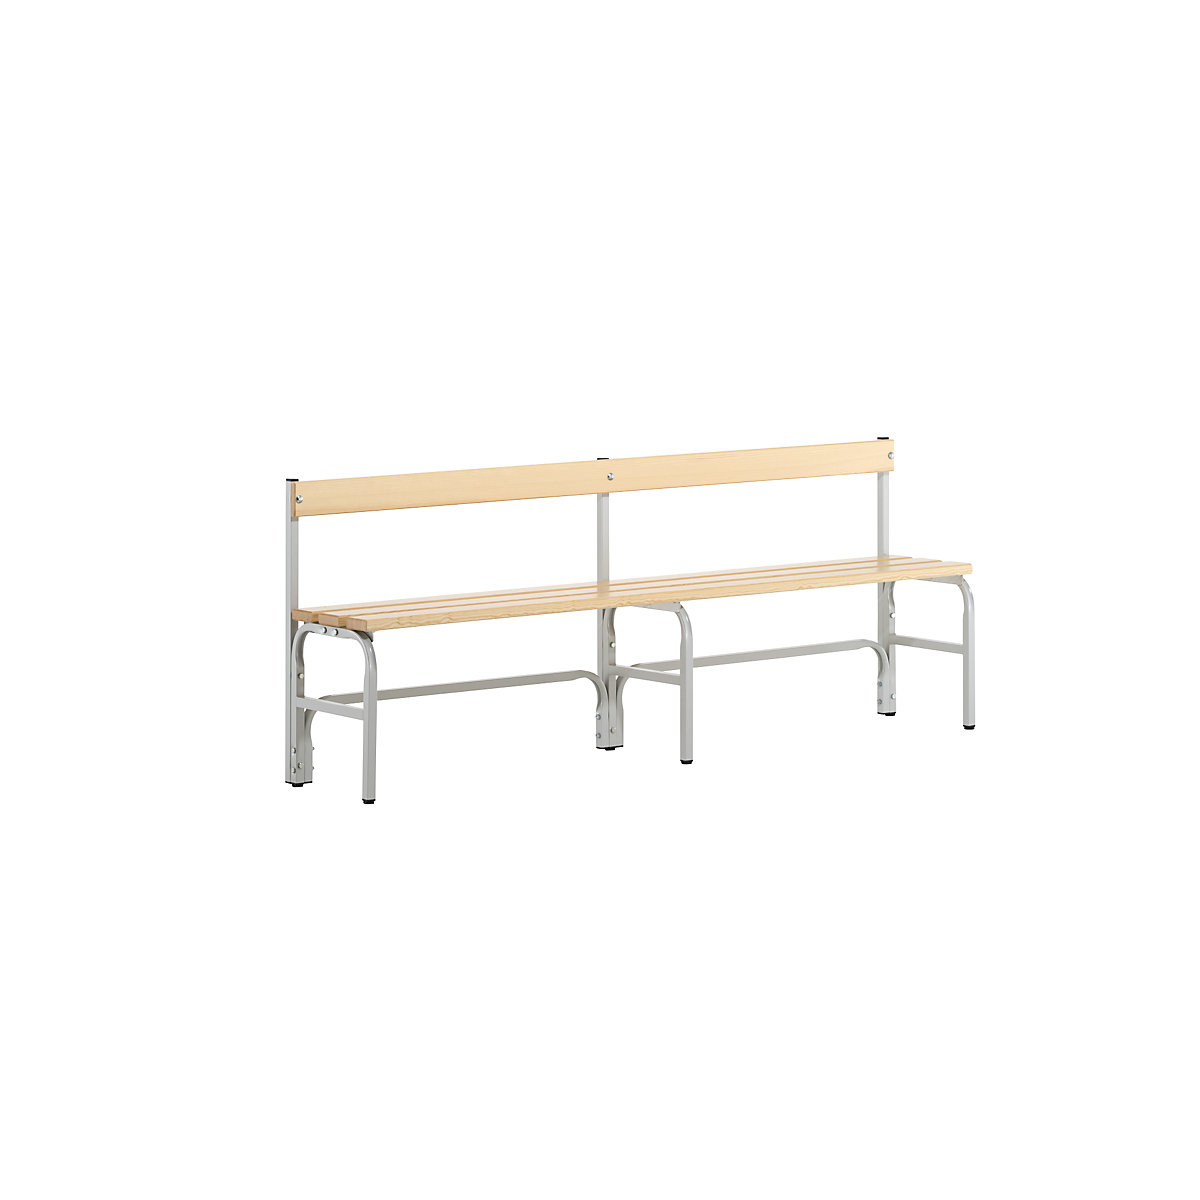 Sypro – Panca per spogliatoi, altezza media con schienale, un lato utile, doghe in legno di pino, lunghezza 2000 mm, grigio chiaro